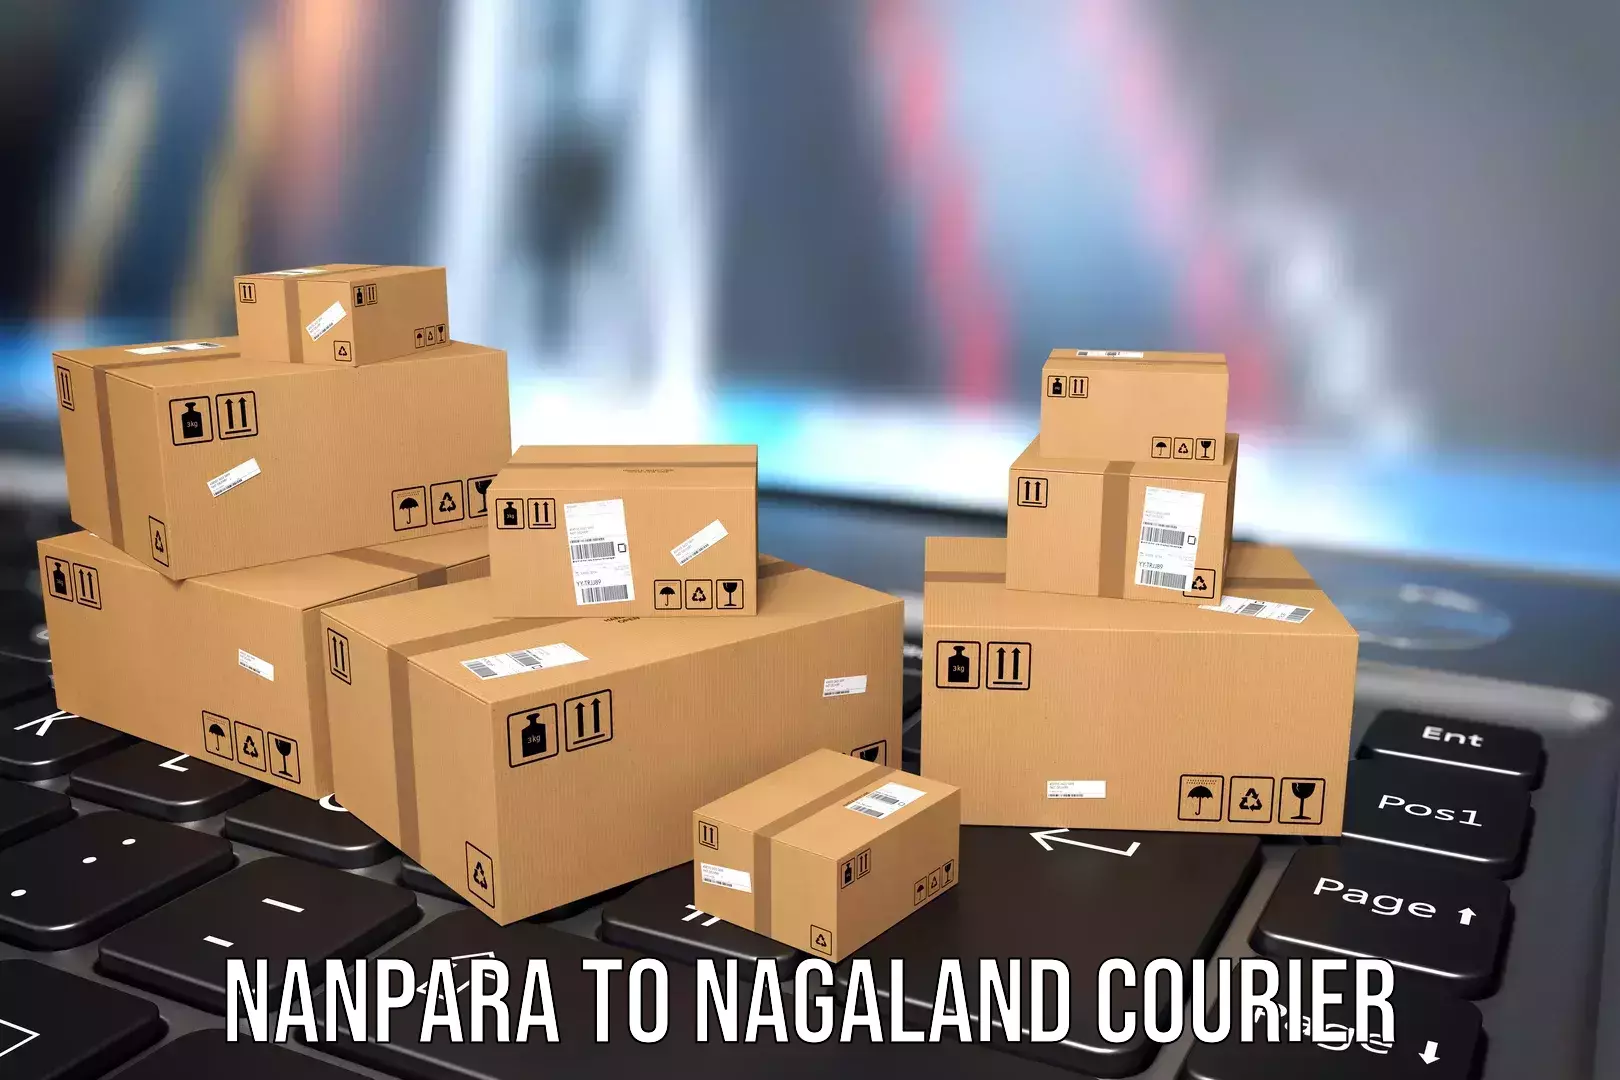 Baggage relocation service Nanpara to Dimapur